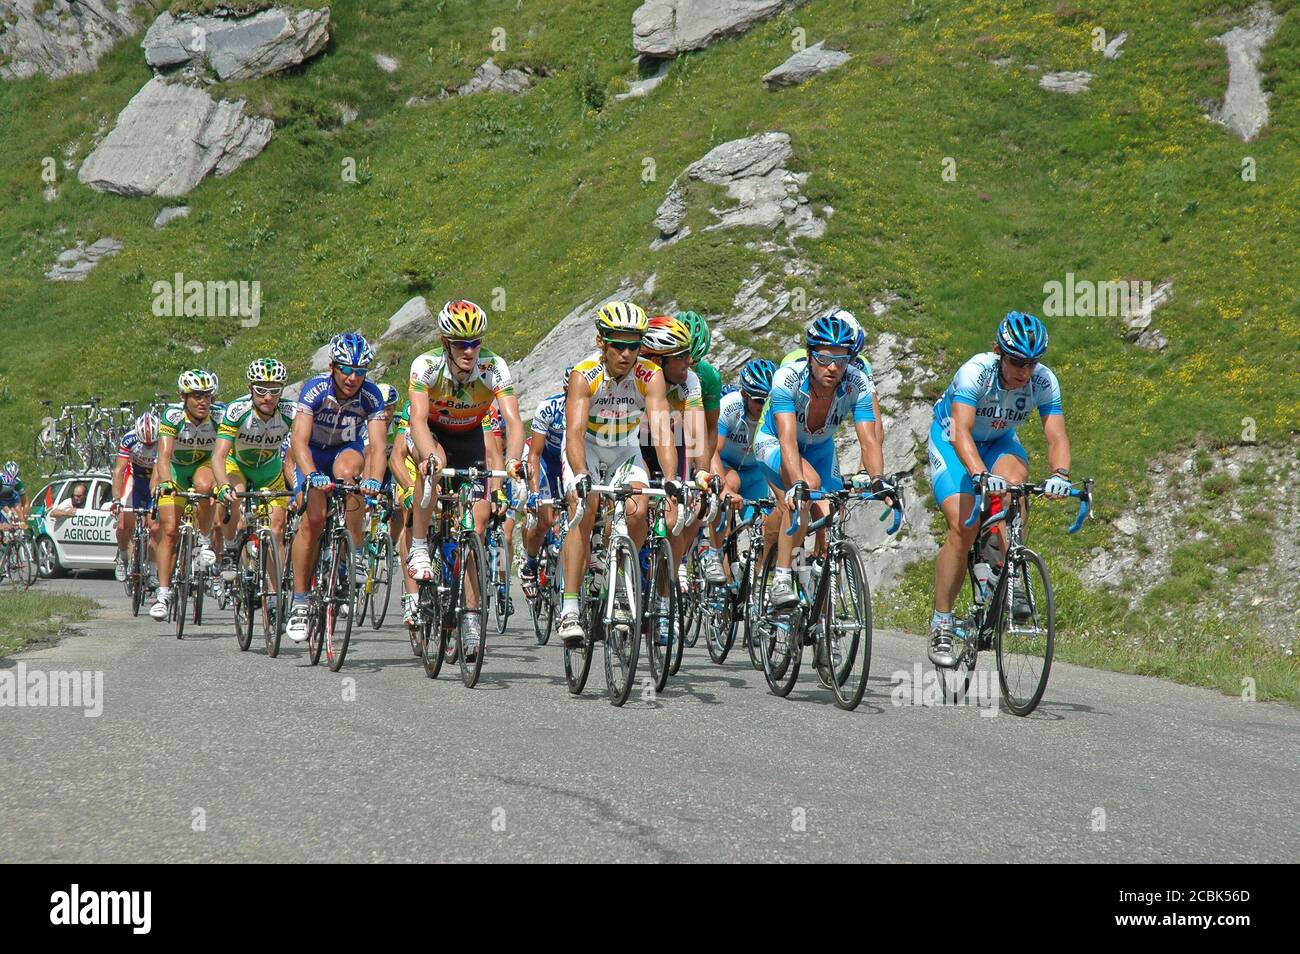 Während der Tour de France Bergetappe 2005 (Etappe 10) machen sich die Fahrer auf den steilen Cormet de Roselend in den französischen Alpen auf den Weg. Stockfoto